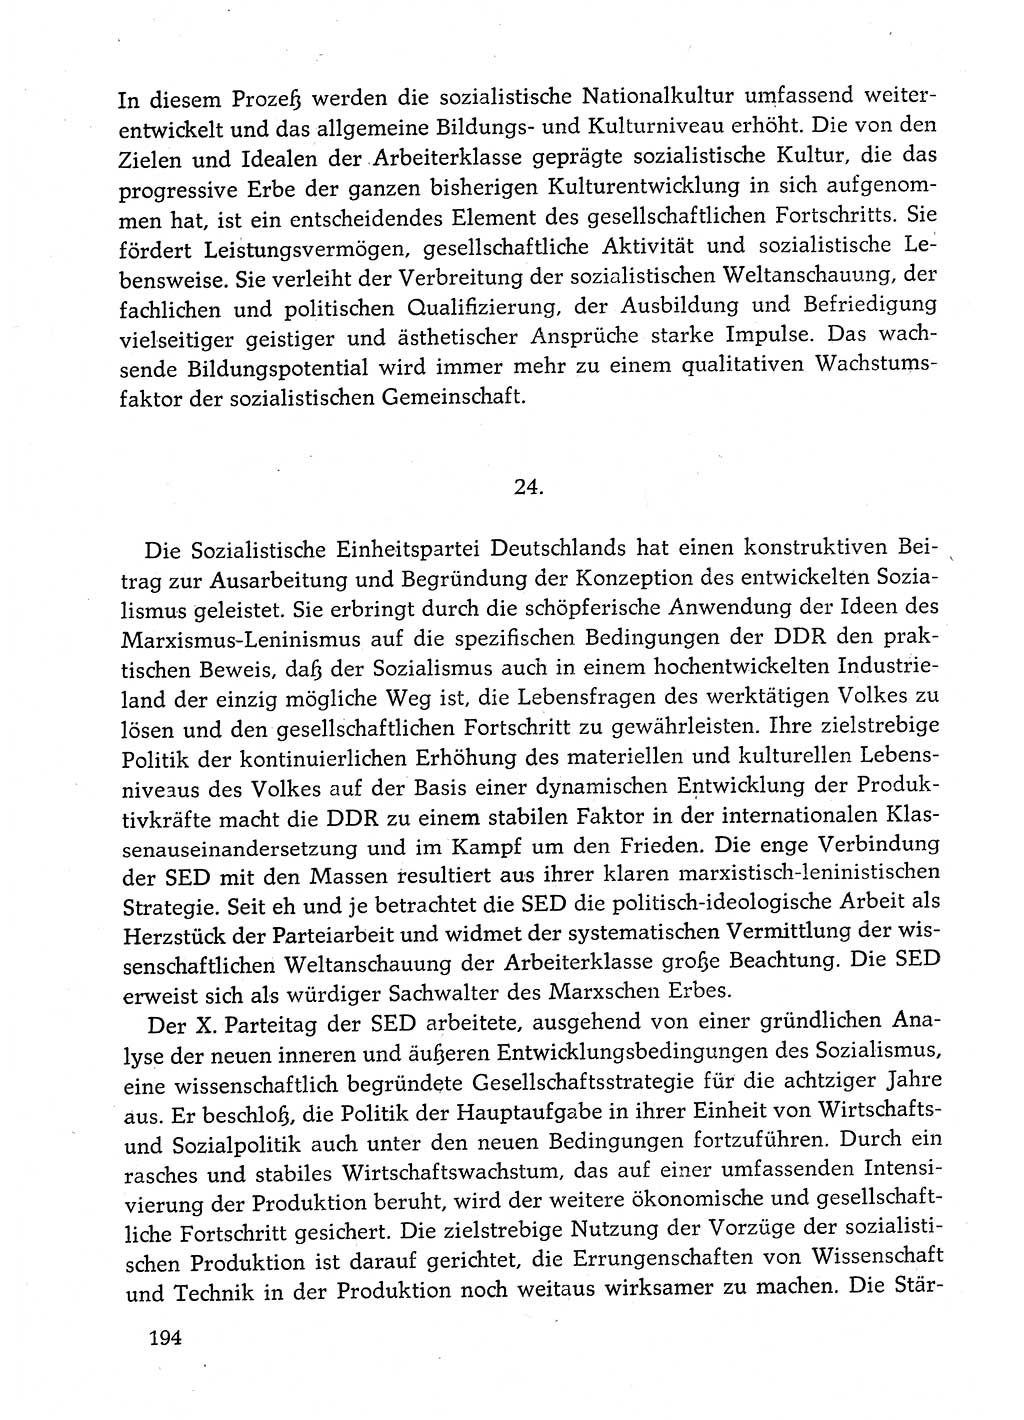 Dokumente der Sozialistischen Einheitspartei Deutschlands (SED) [Deutsche Demokratische Republik (DDR)] 1982-1983, Seite 194 (Dok. SED DDR 1982-1983, S. 194)